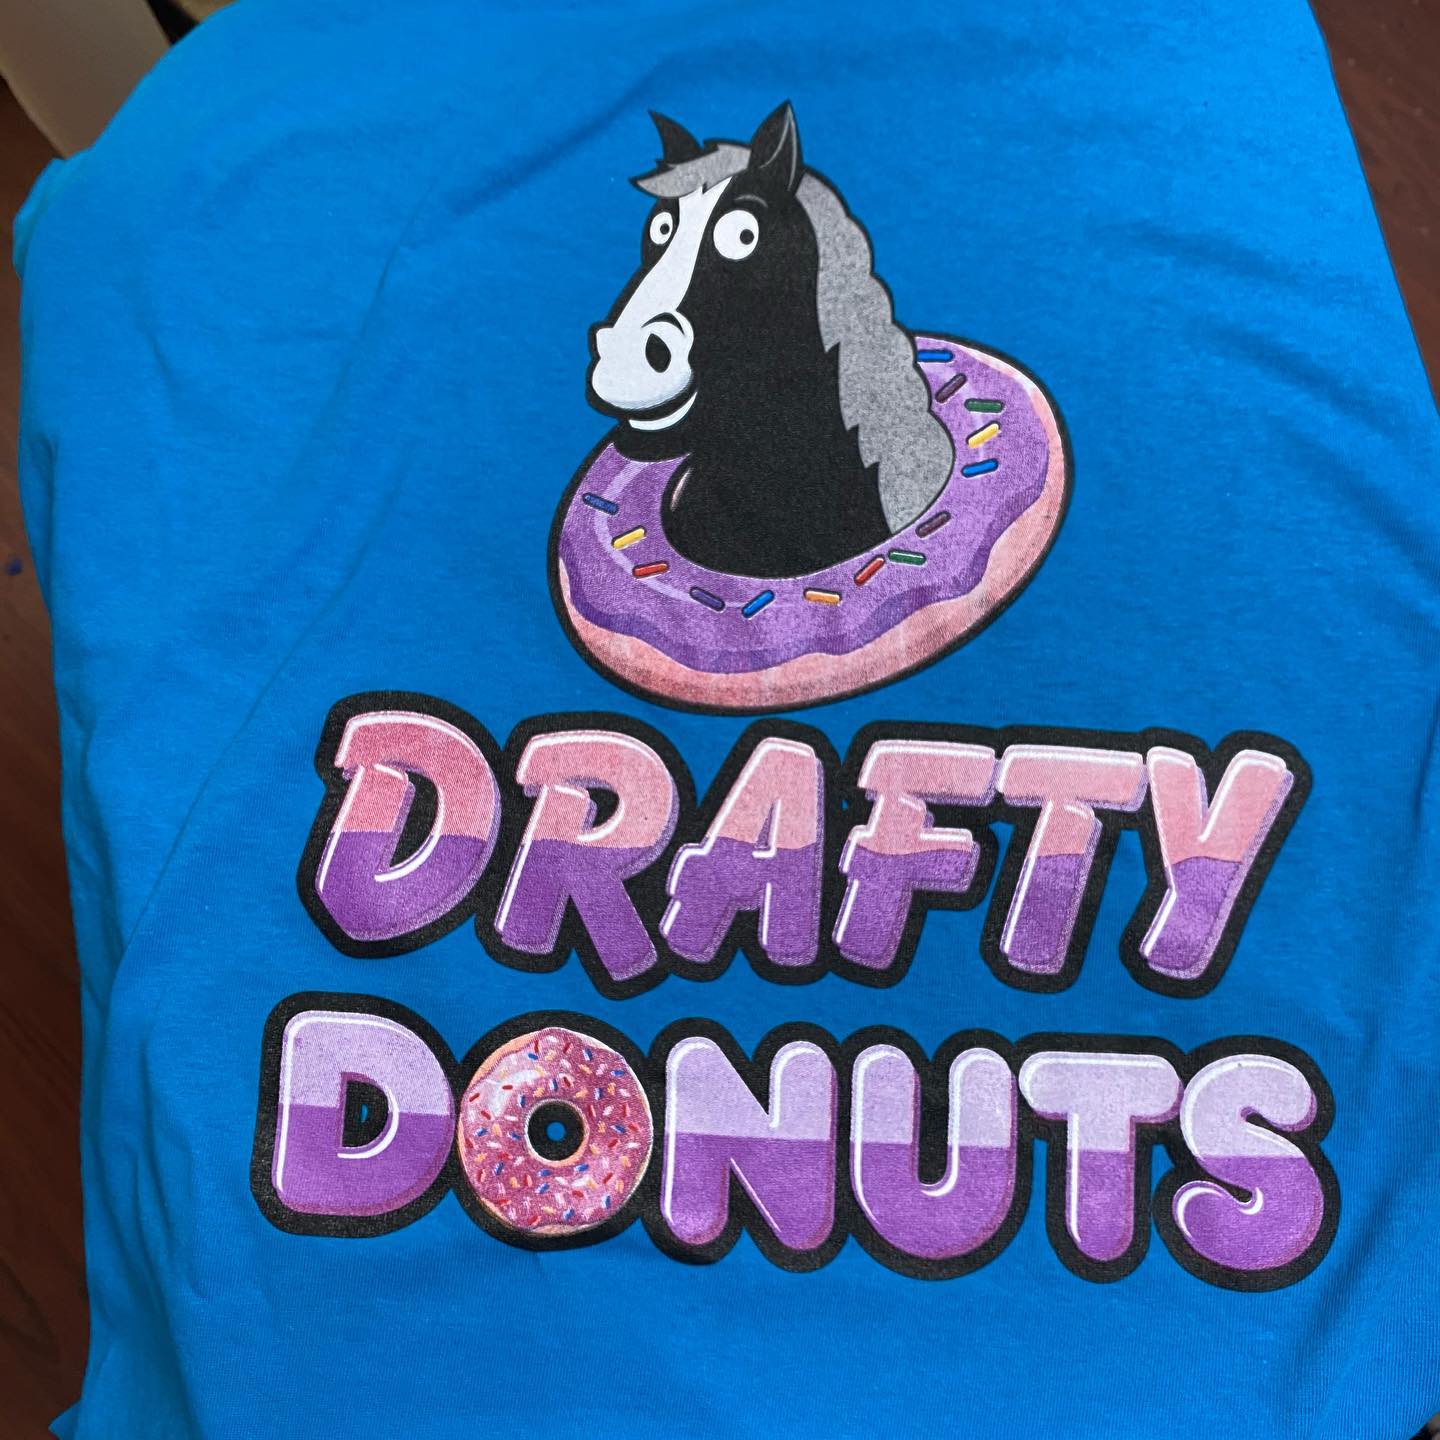 Drafty Donuts Shirts 3